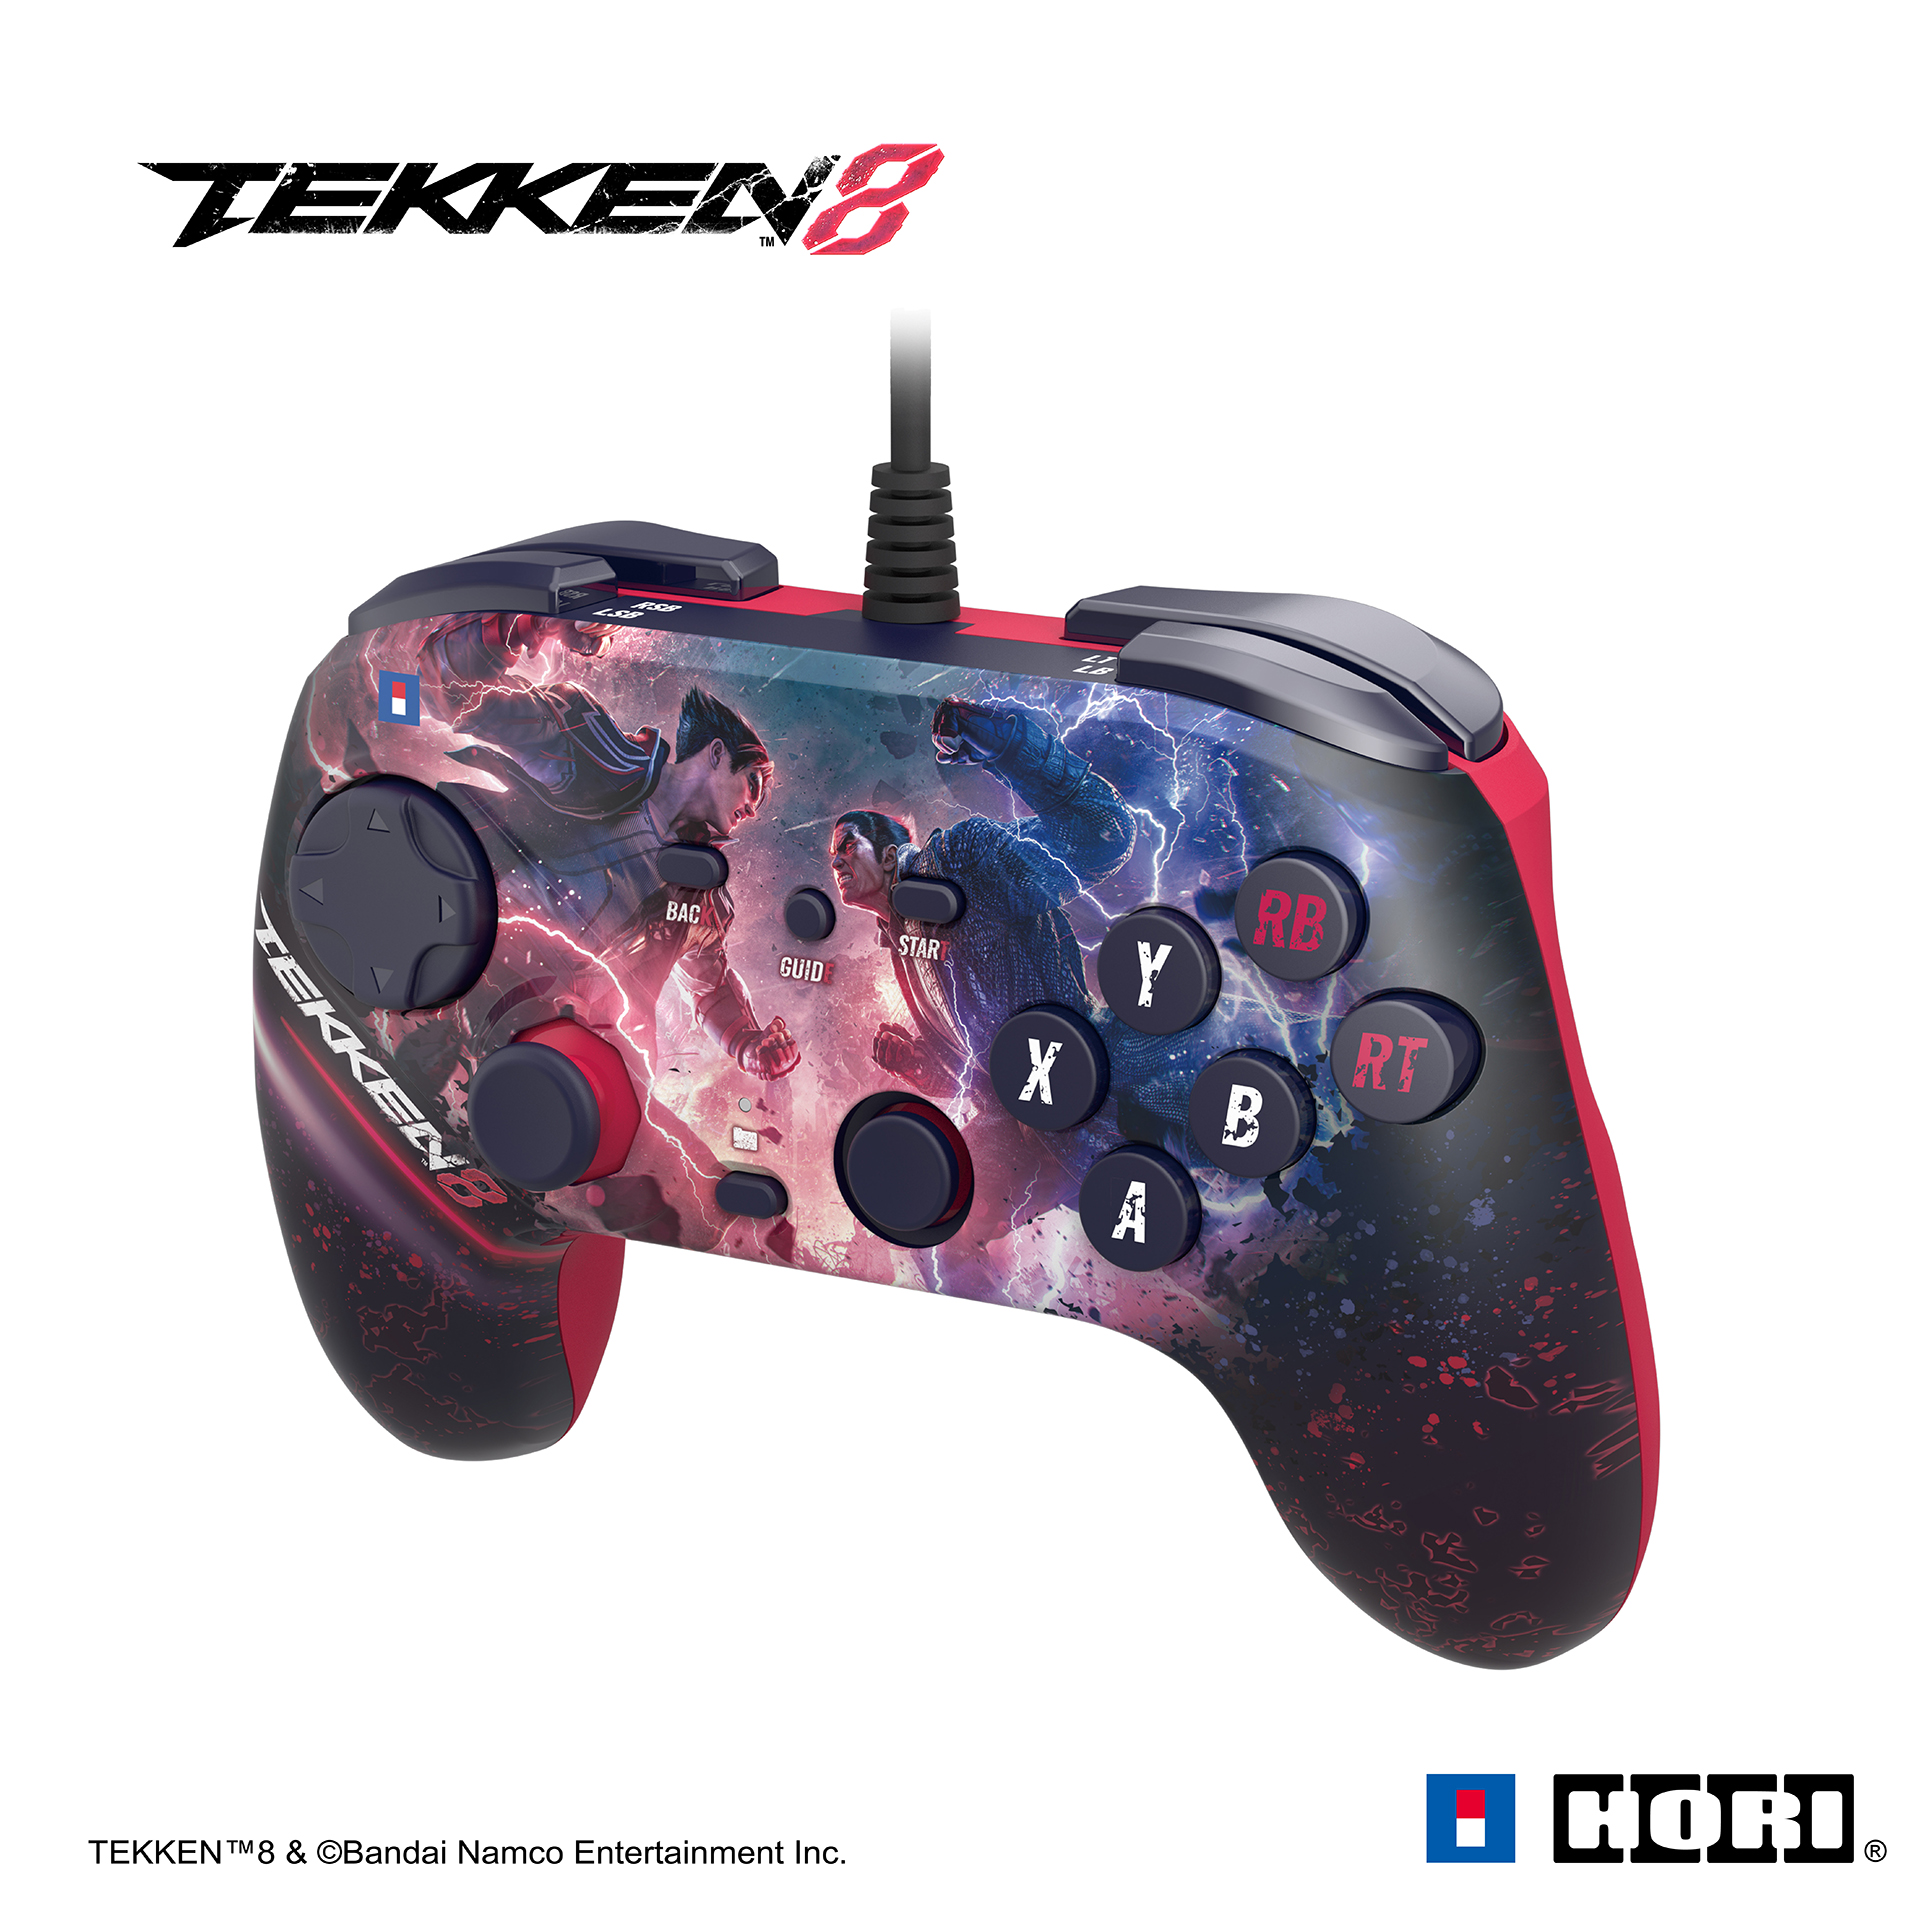 格闘ゲーム向けパッド型コントローラー「TEKKEN8 ファイティング 